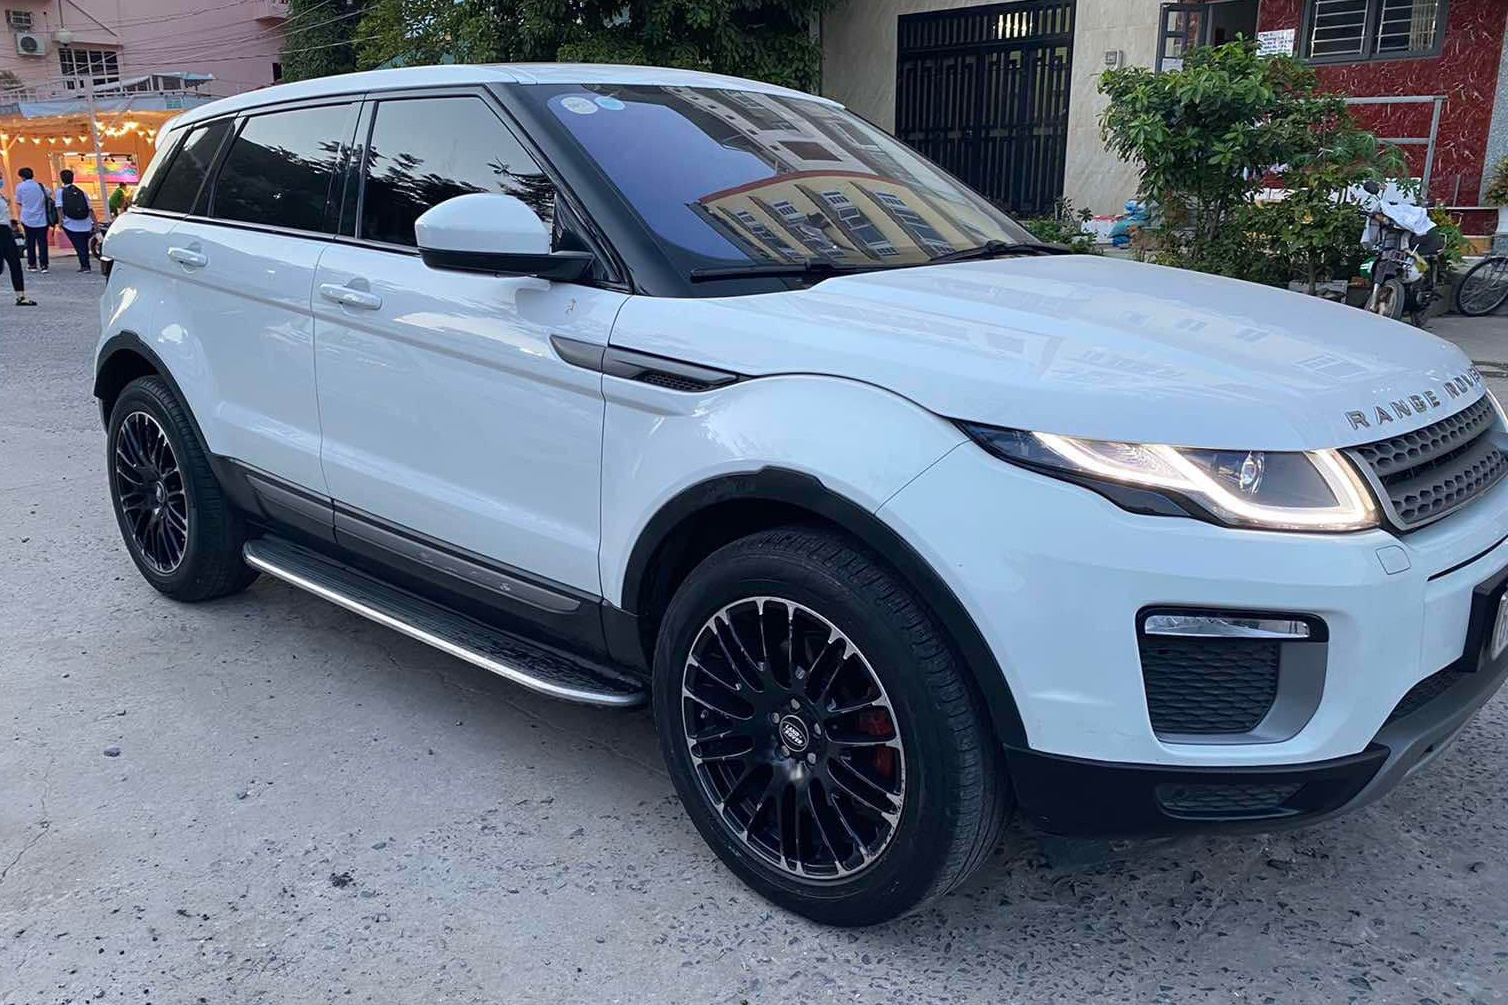 Bị CĐM thắc mắc khi bán Range Rover Evoque 2018 giá hơn 700 triệu, chủ xe khẳng định: 'Không phải xe trộm cắp, nói không với lừa đảo'